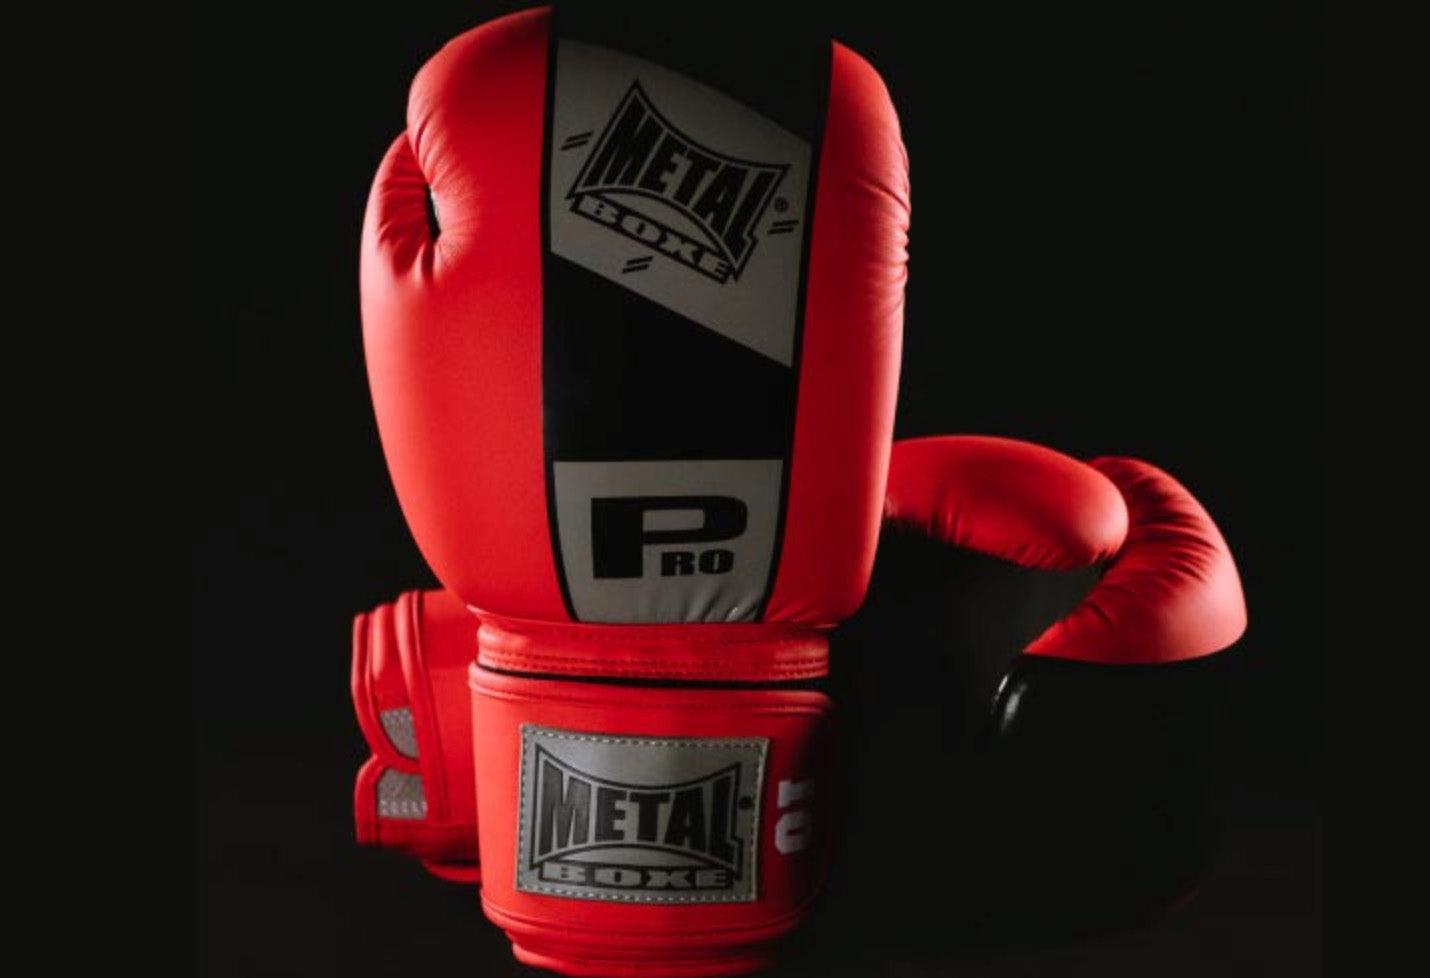 Gants de boxe Metal Boxe Compétition Velcro Pro (MB222)